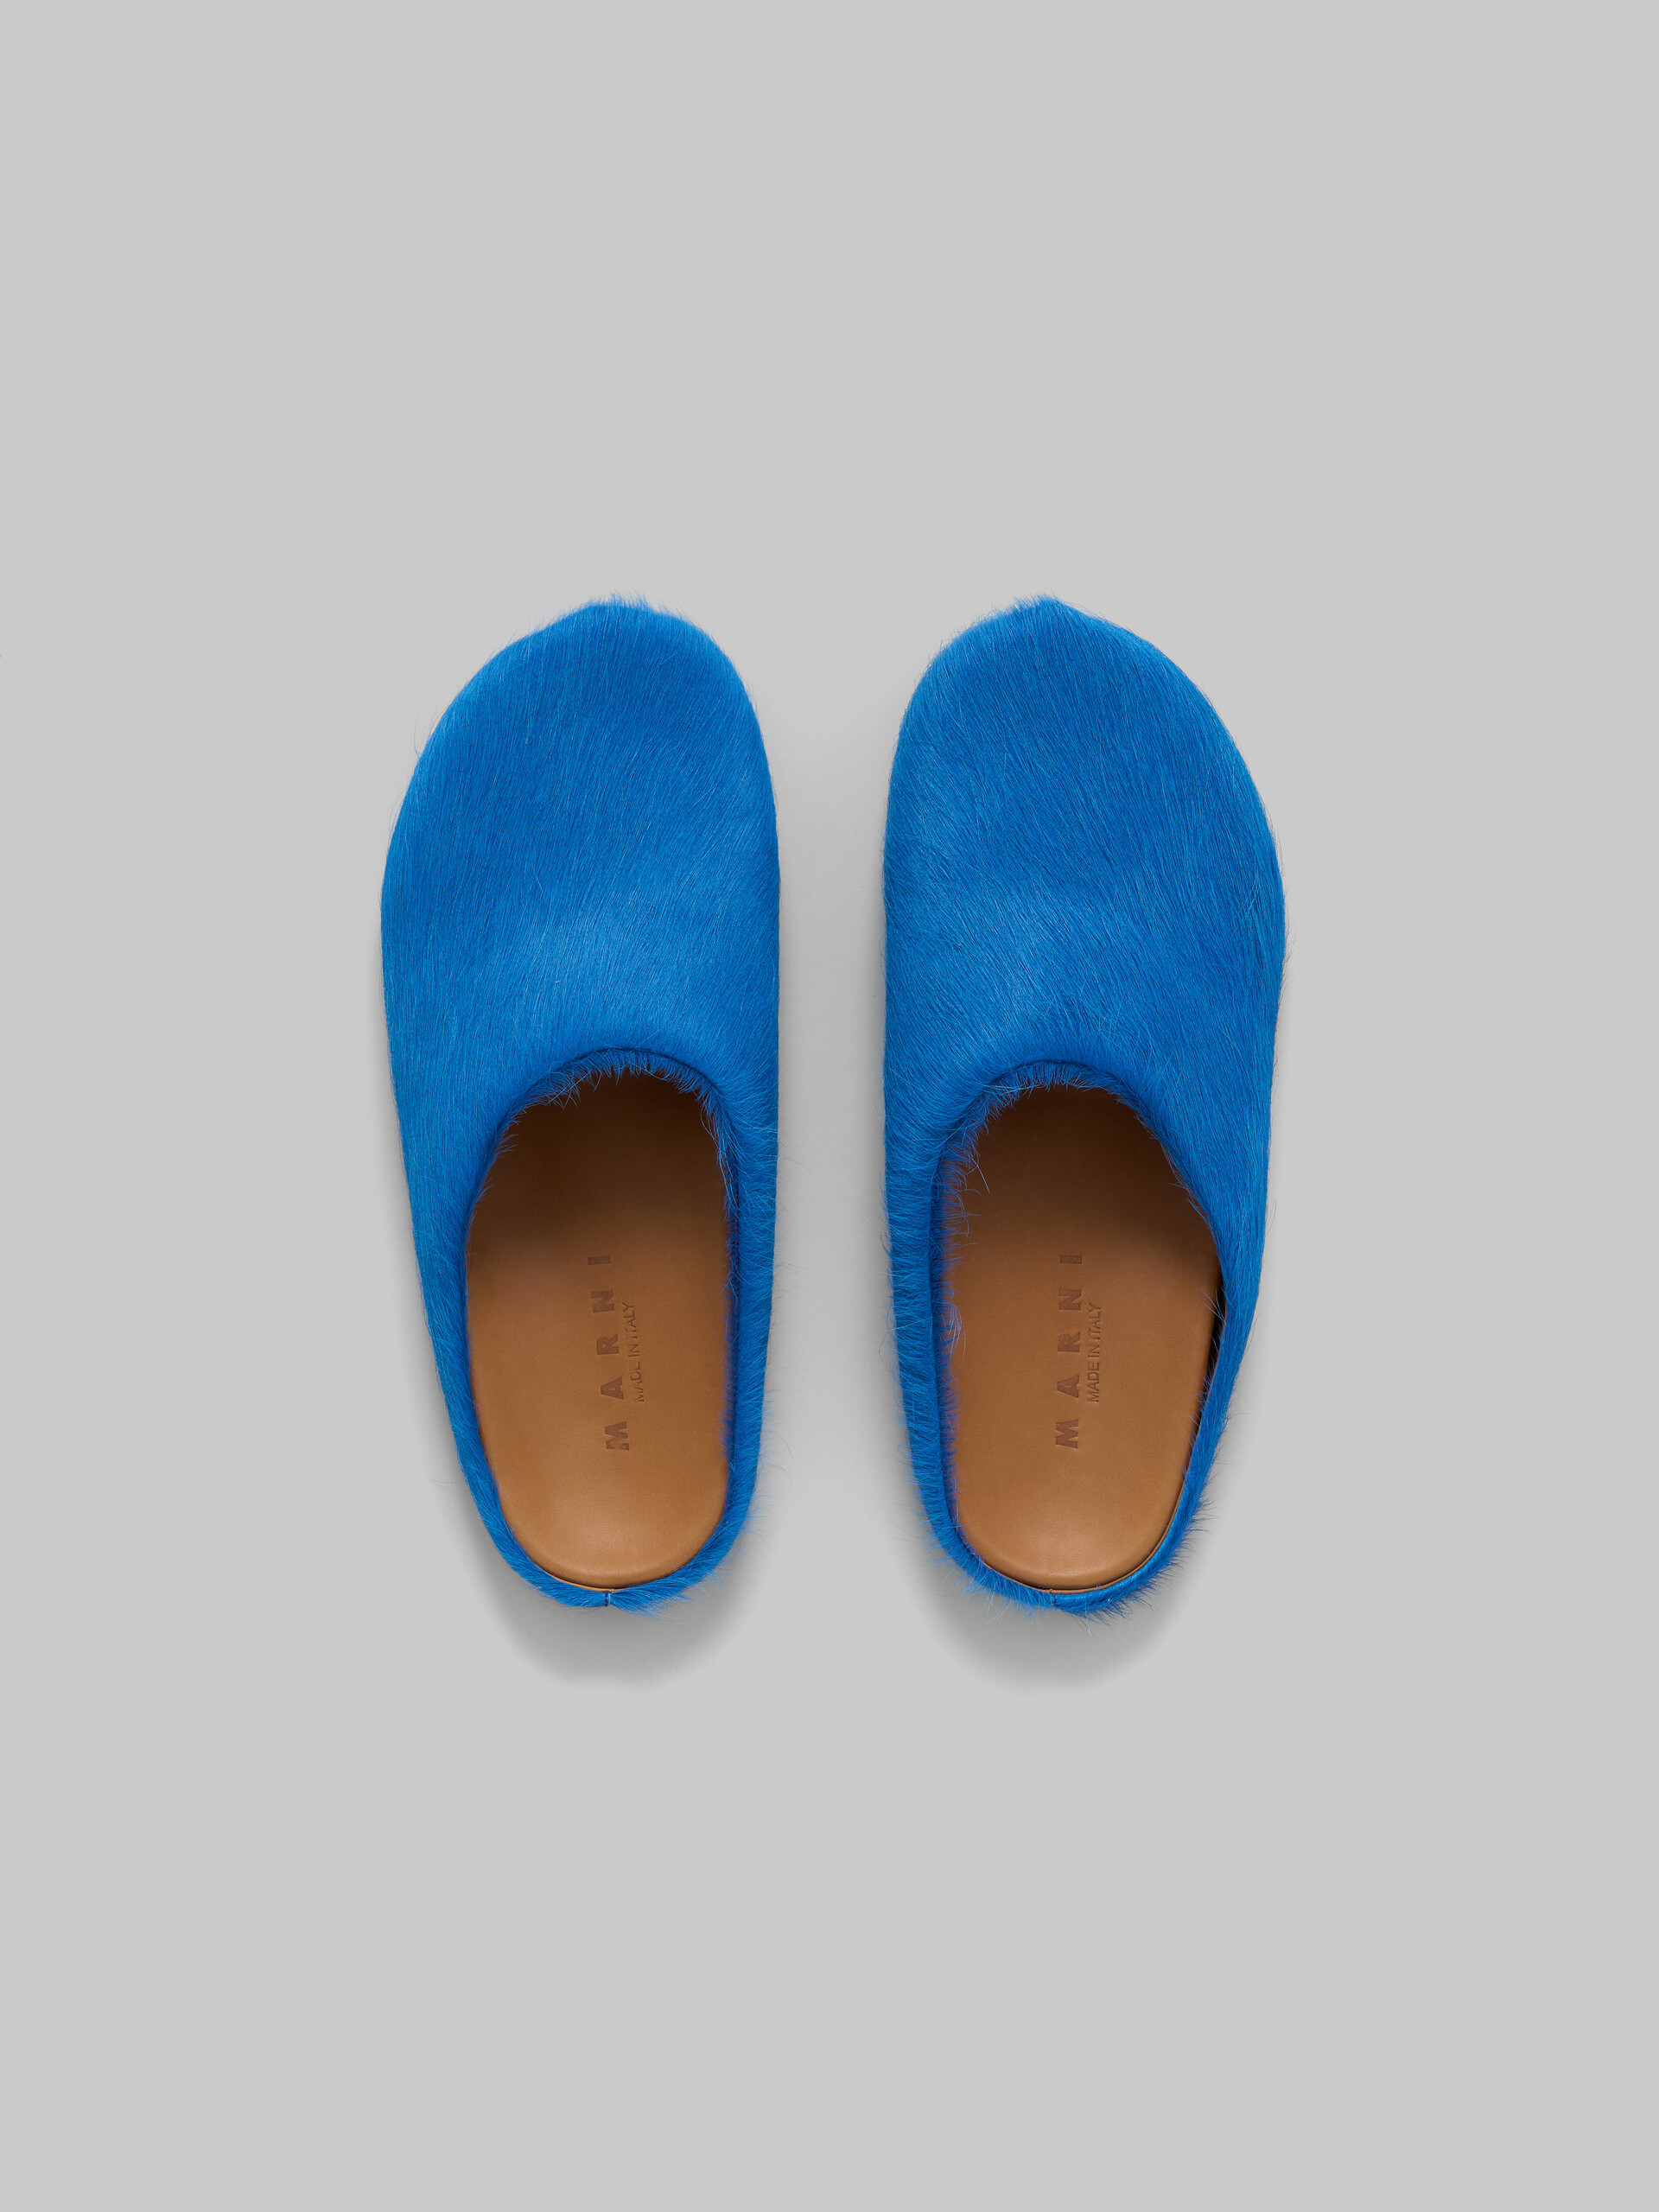 Mocasín sin talón de piel de becerro azul efecto pelo sensación de pies descalzos - Zuecos - Image 4